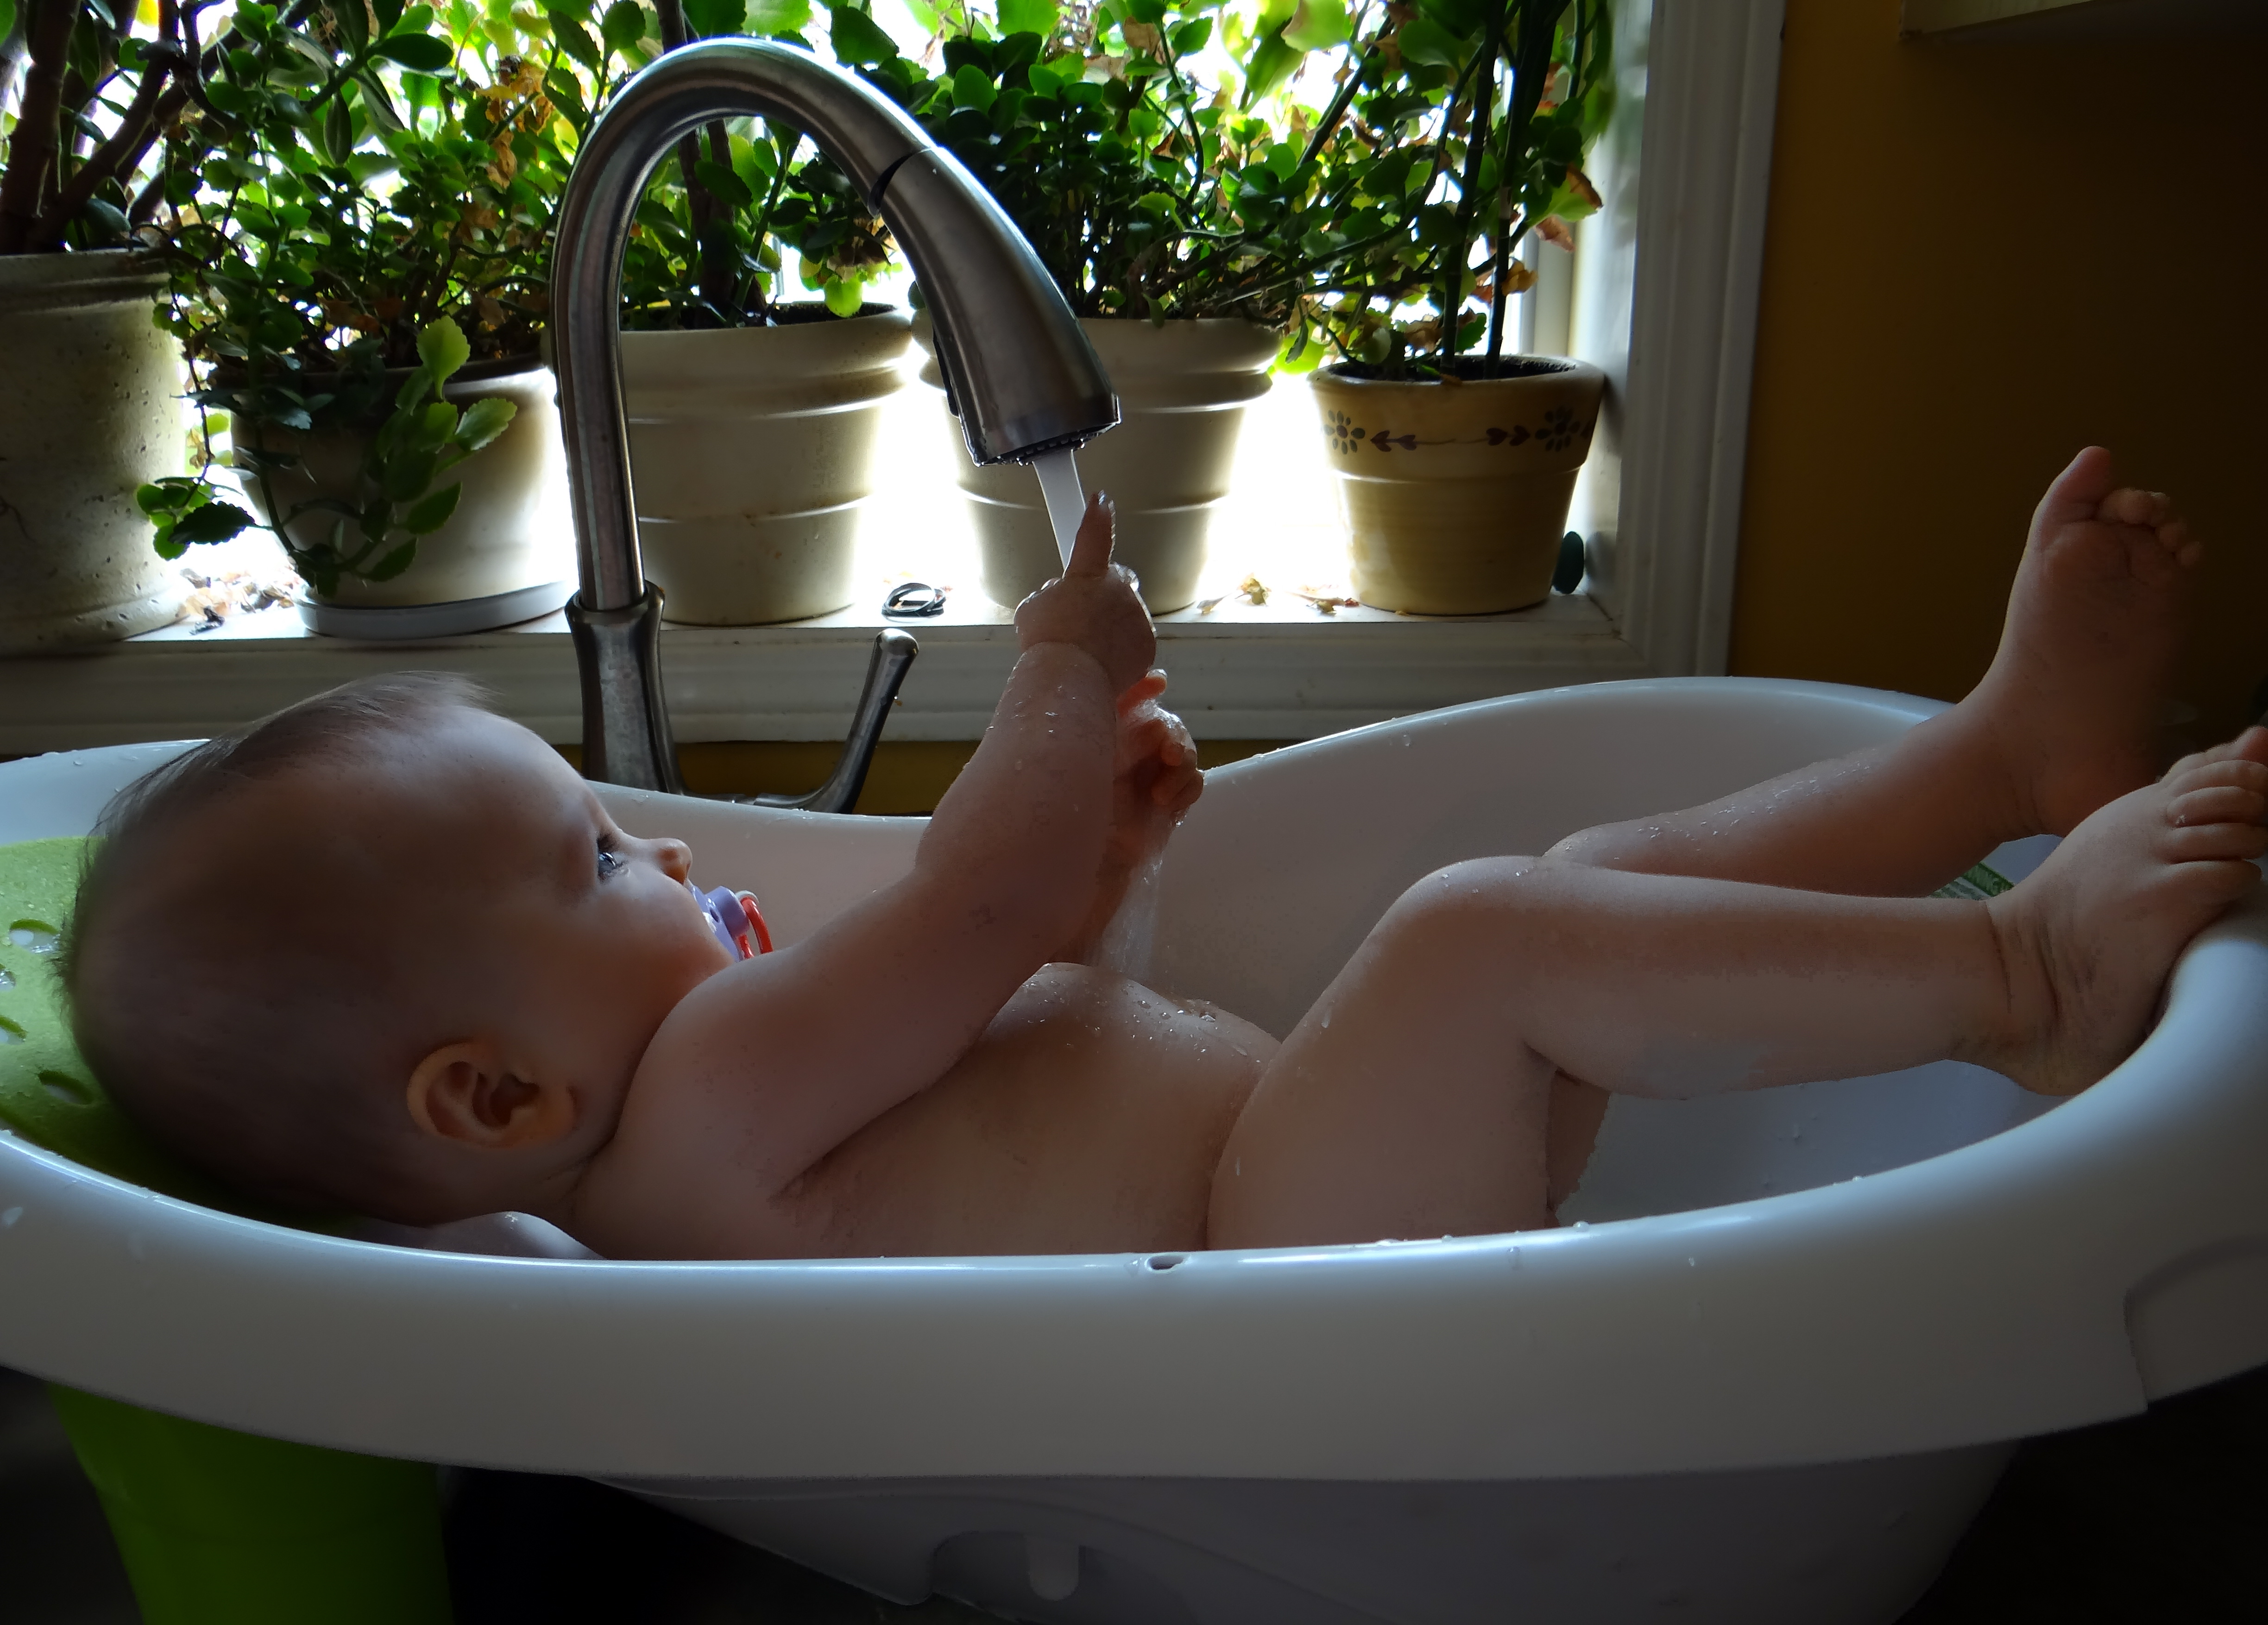 Baby in an infant bathtub